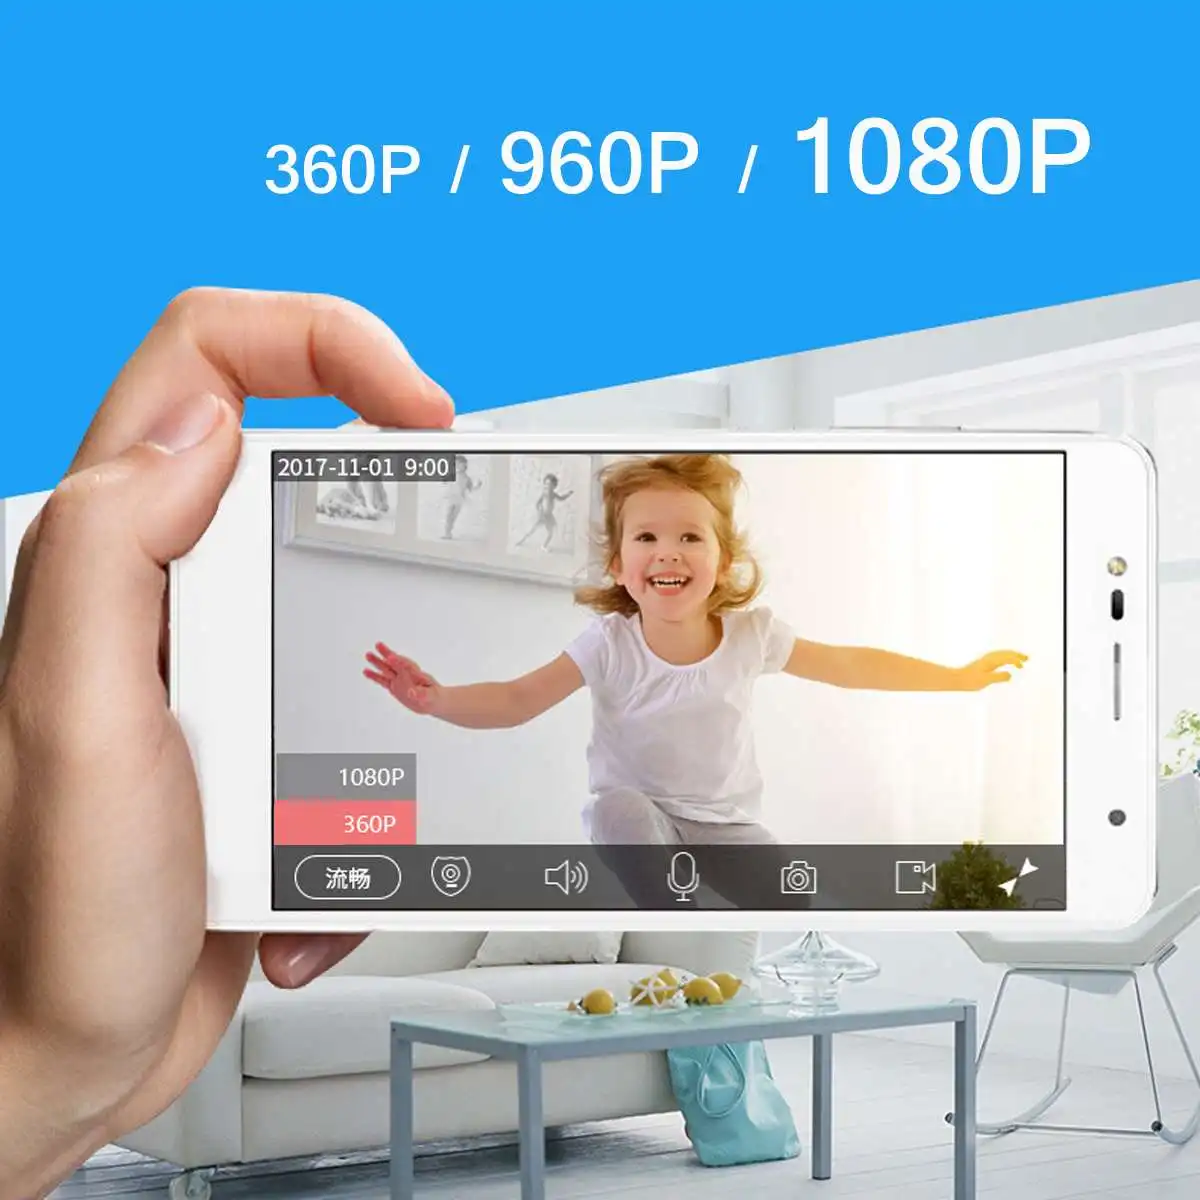 1080P умная Беспроводная ip-камера аудио Wifi камера видеонаблюдения домашняя сигнализация 2.0MP камера наблюдения крытая камера alexa для echo